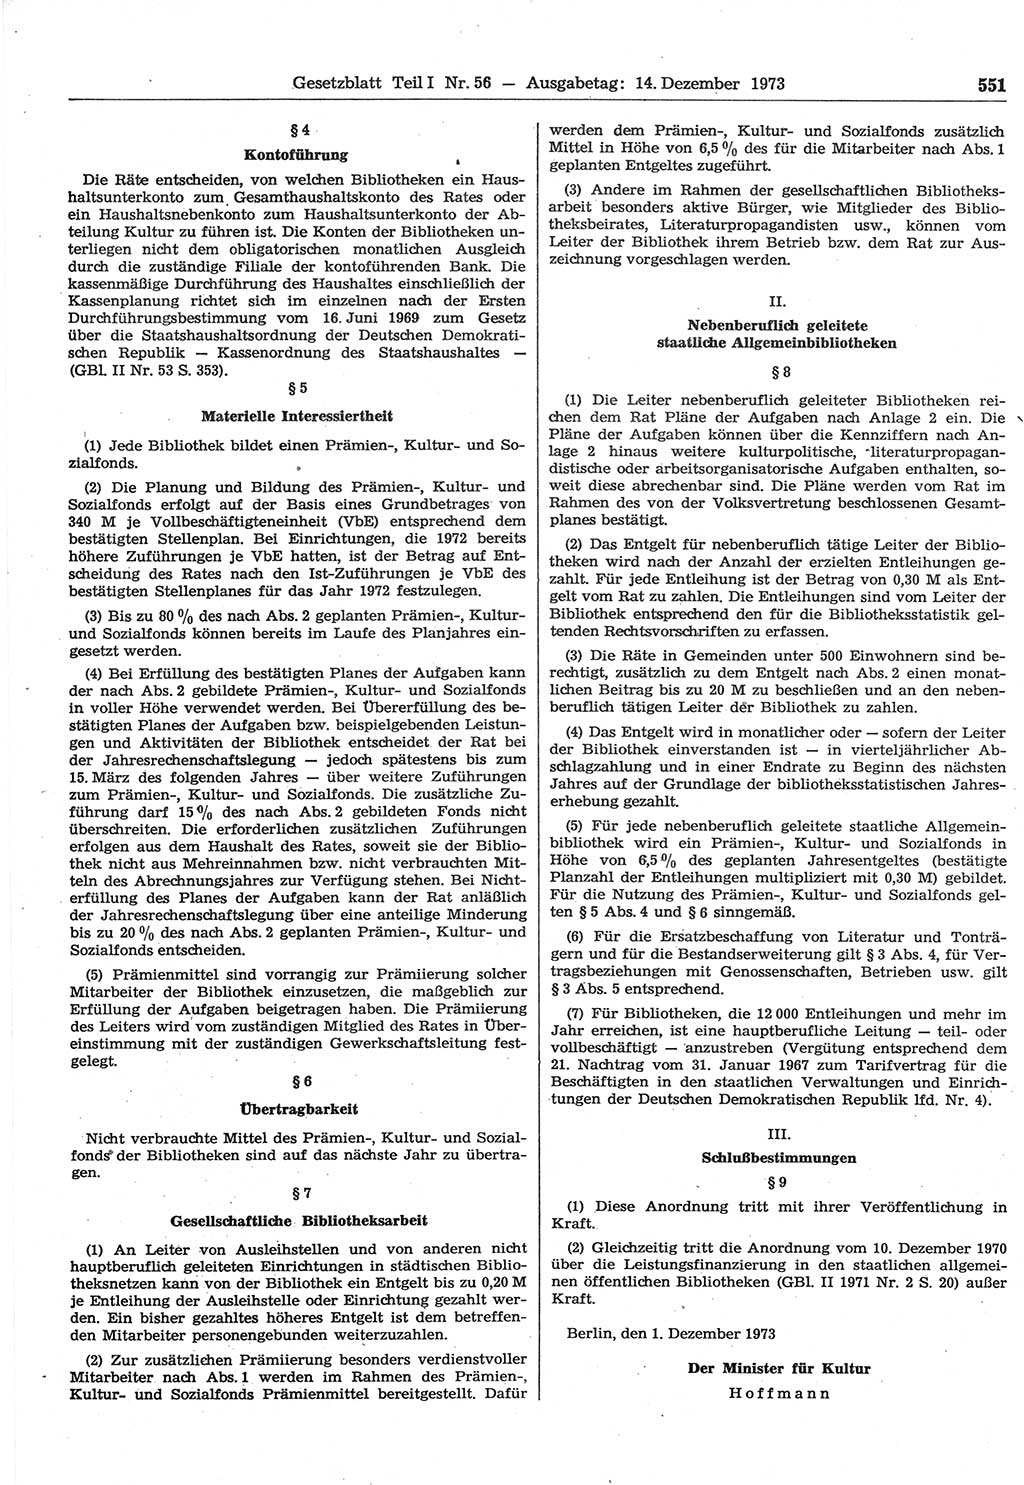 Gesetzblatt (GBl.) der Deutschen Demokratischen Republik (DDR) Teil Ⅰ 1973, Seite 551 (GBl. DDR Ⅰ 1973, S. 551)